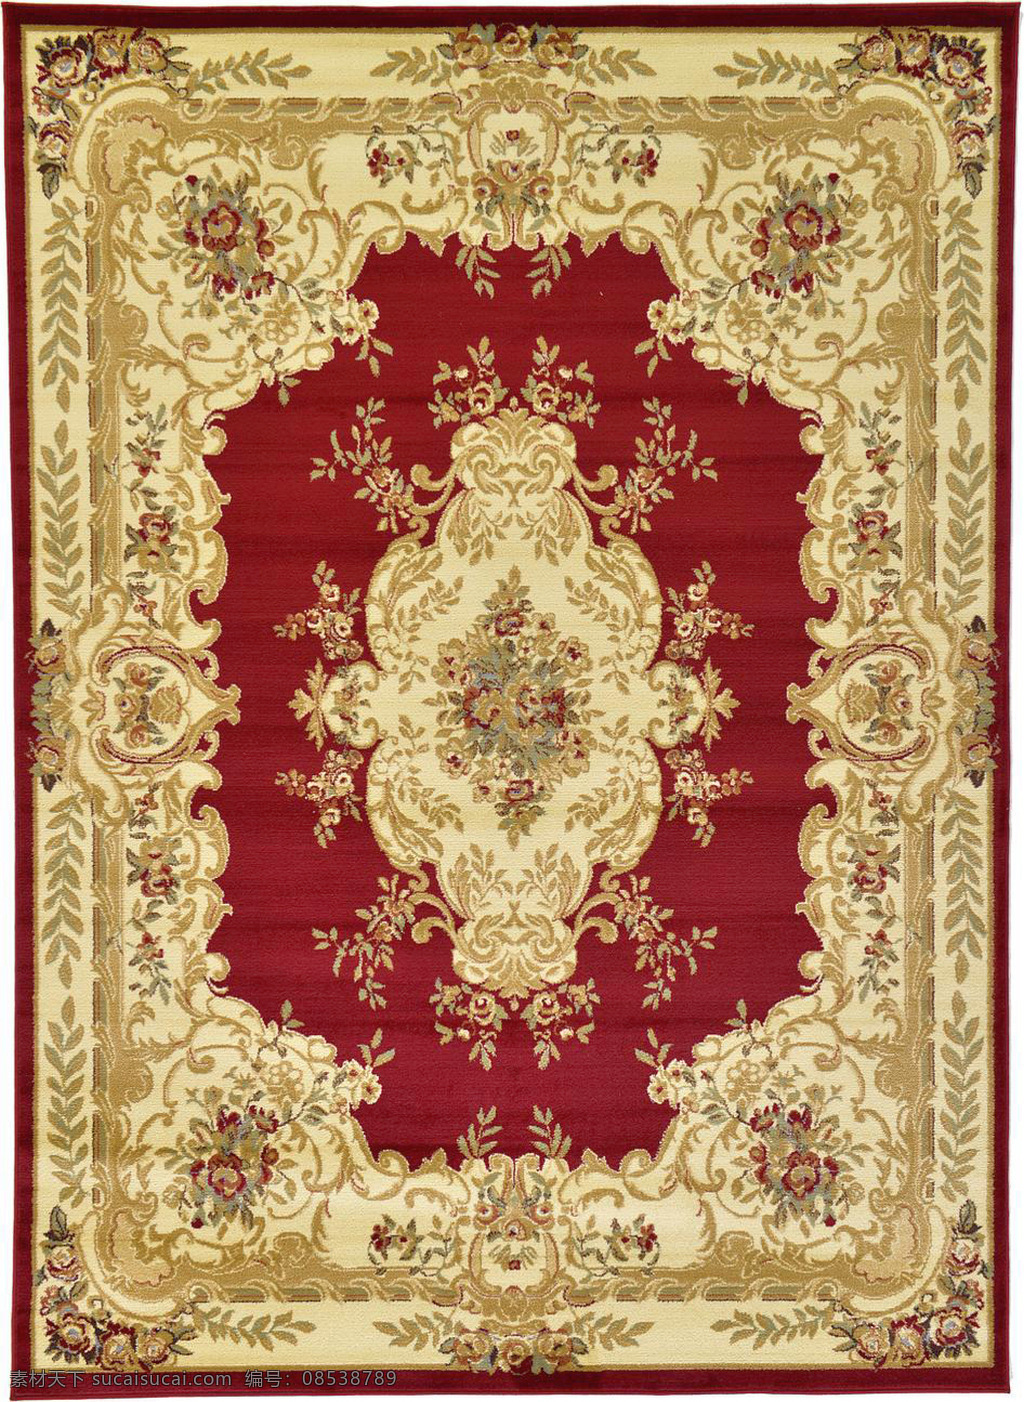 方形 红色 图案 古典 经典 地毯 欧式 花边 花纹 底纹边框 欧式地毯 花边花纹